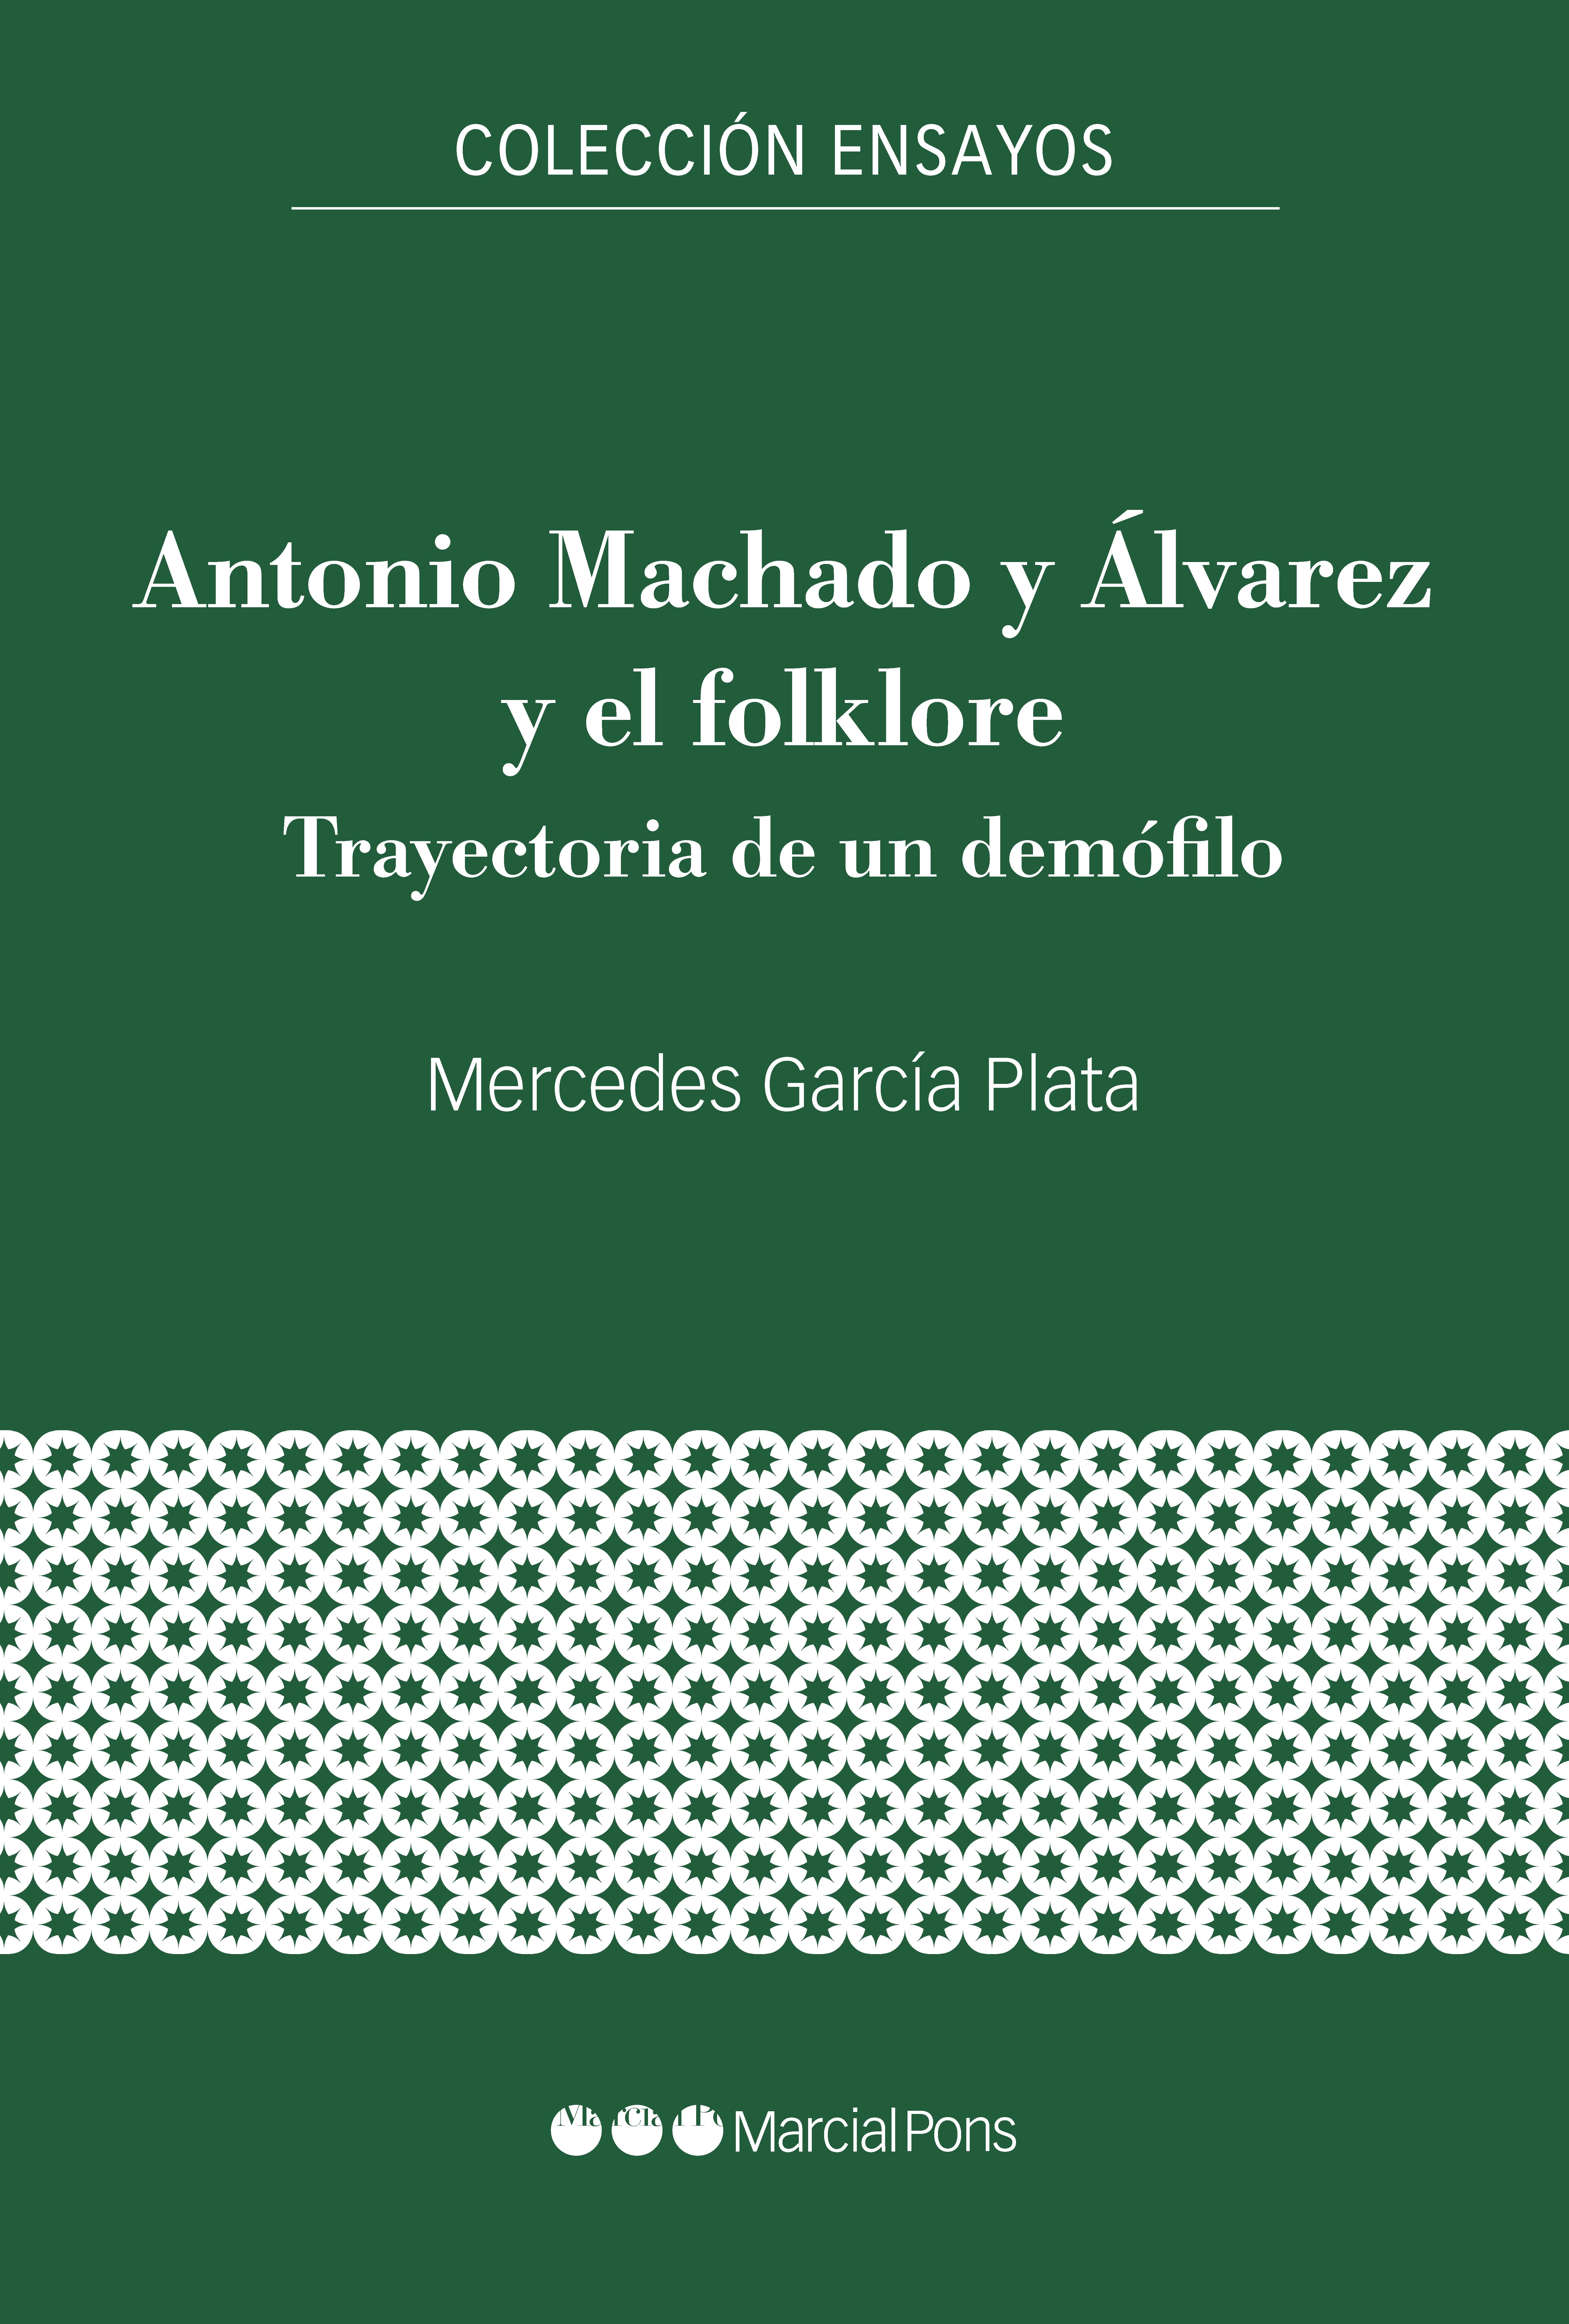 ANTONIO MACHADO Y ALVAREZ Y EL FOLKLORE "TRAYECTORIA DE UN DEMOFILO". 